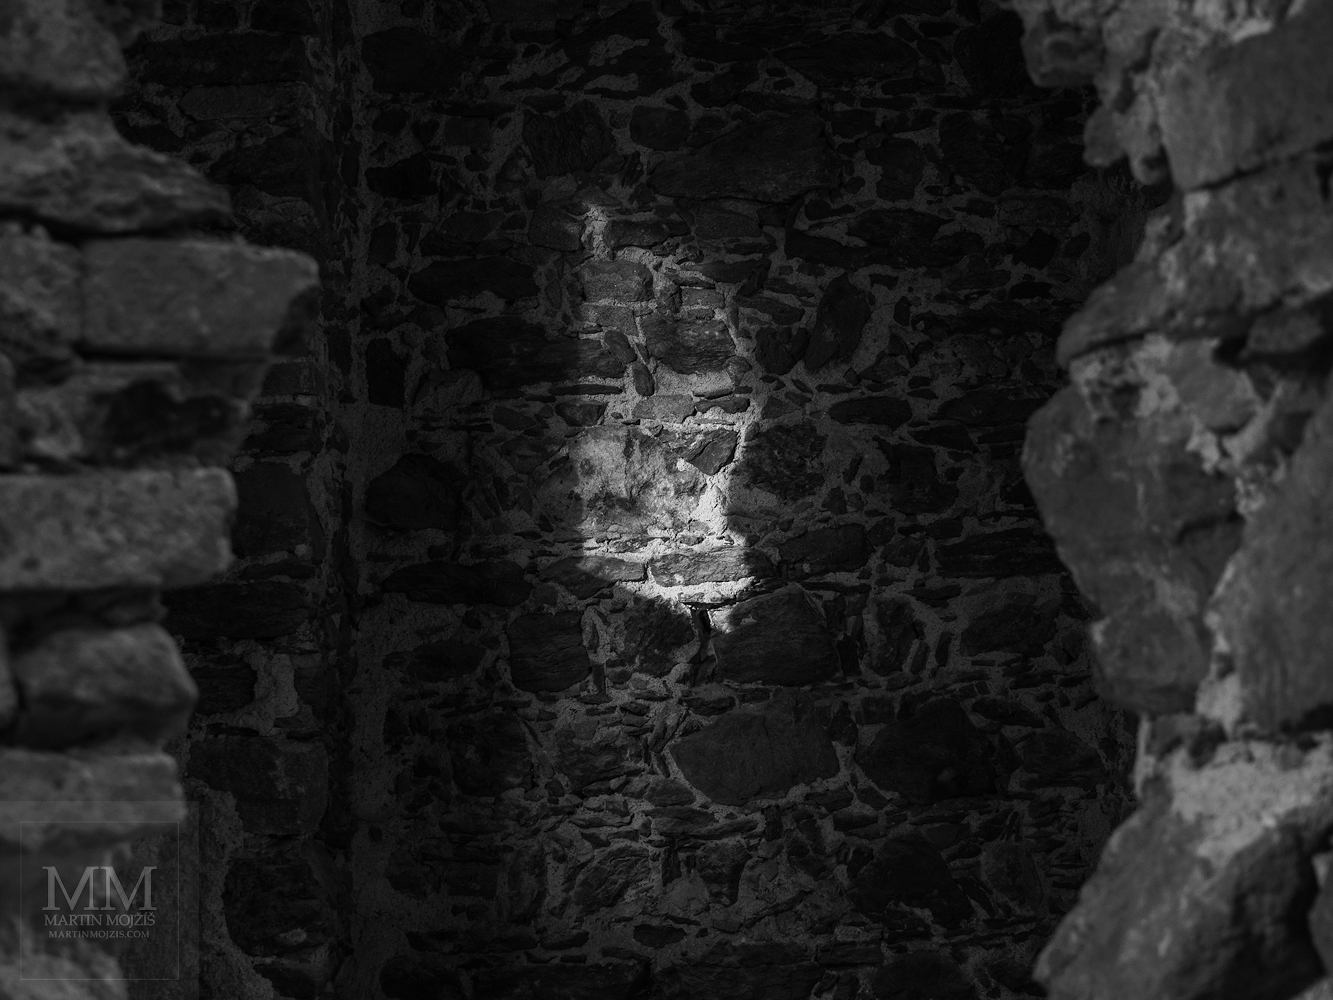 Umělecká černobílá fotografie s názvem Světlo v temnotách. Martin Mojžíš.